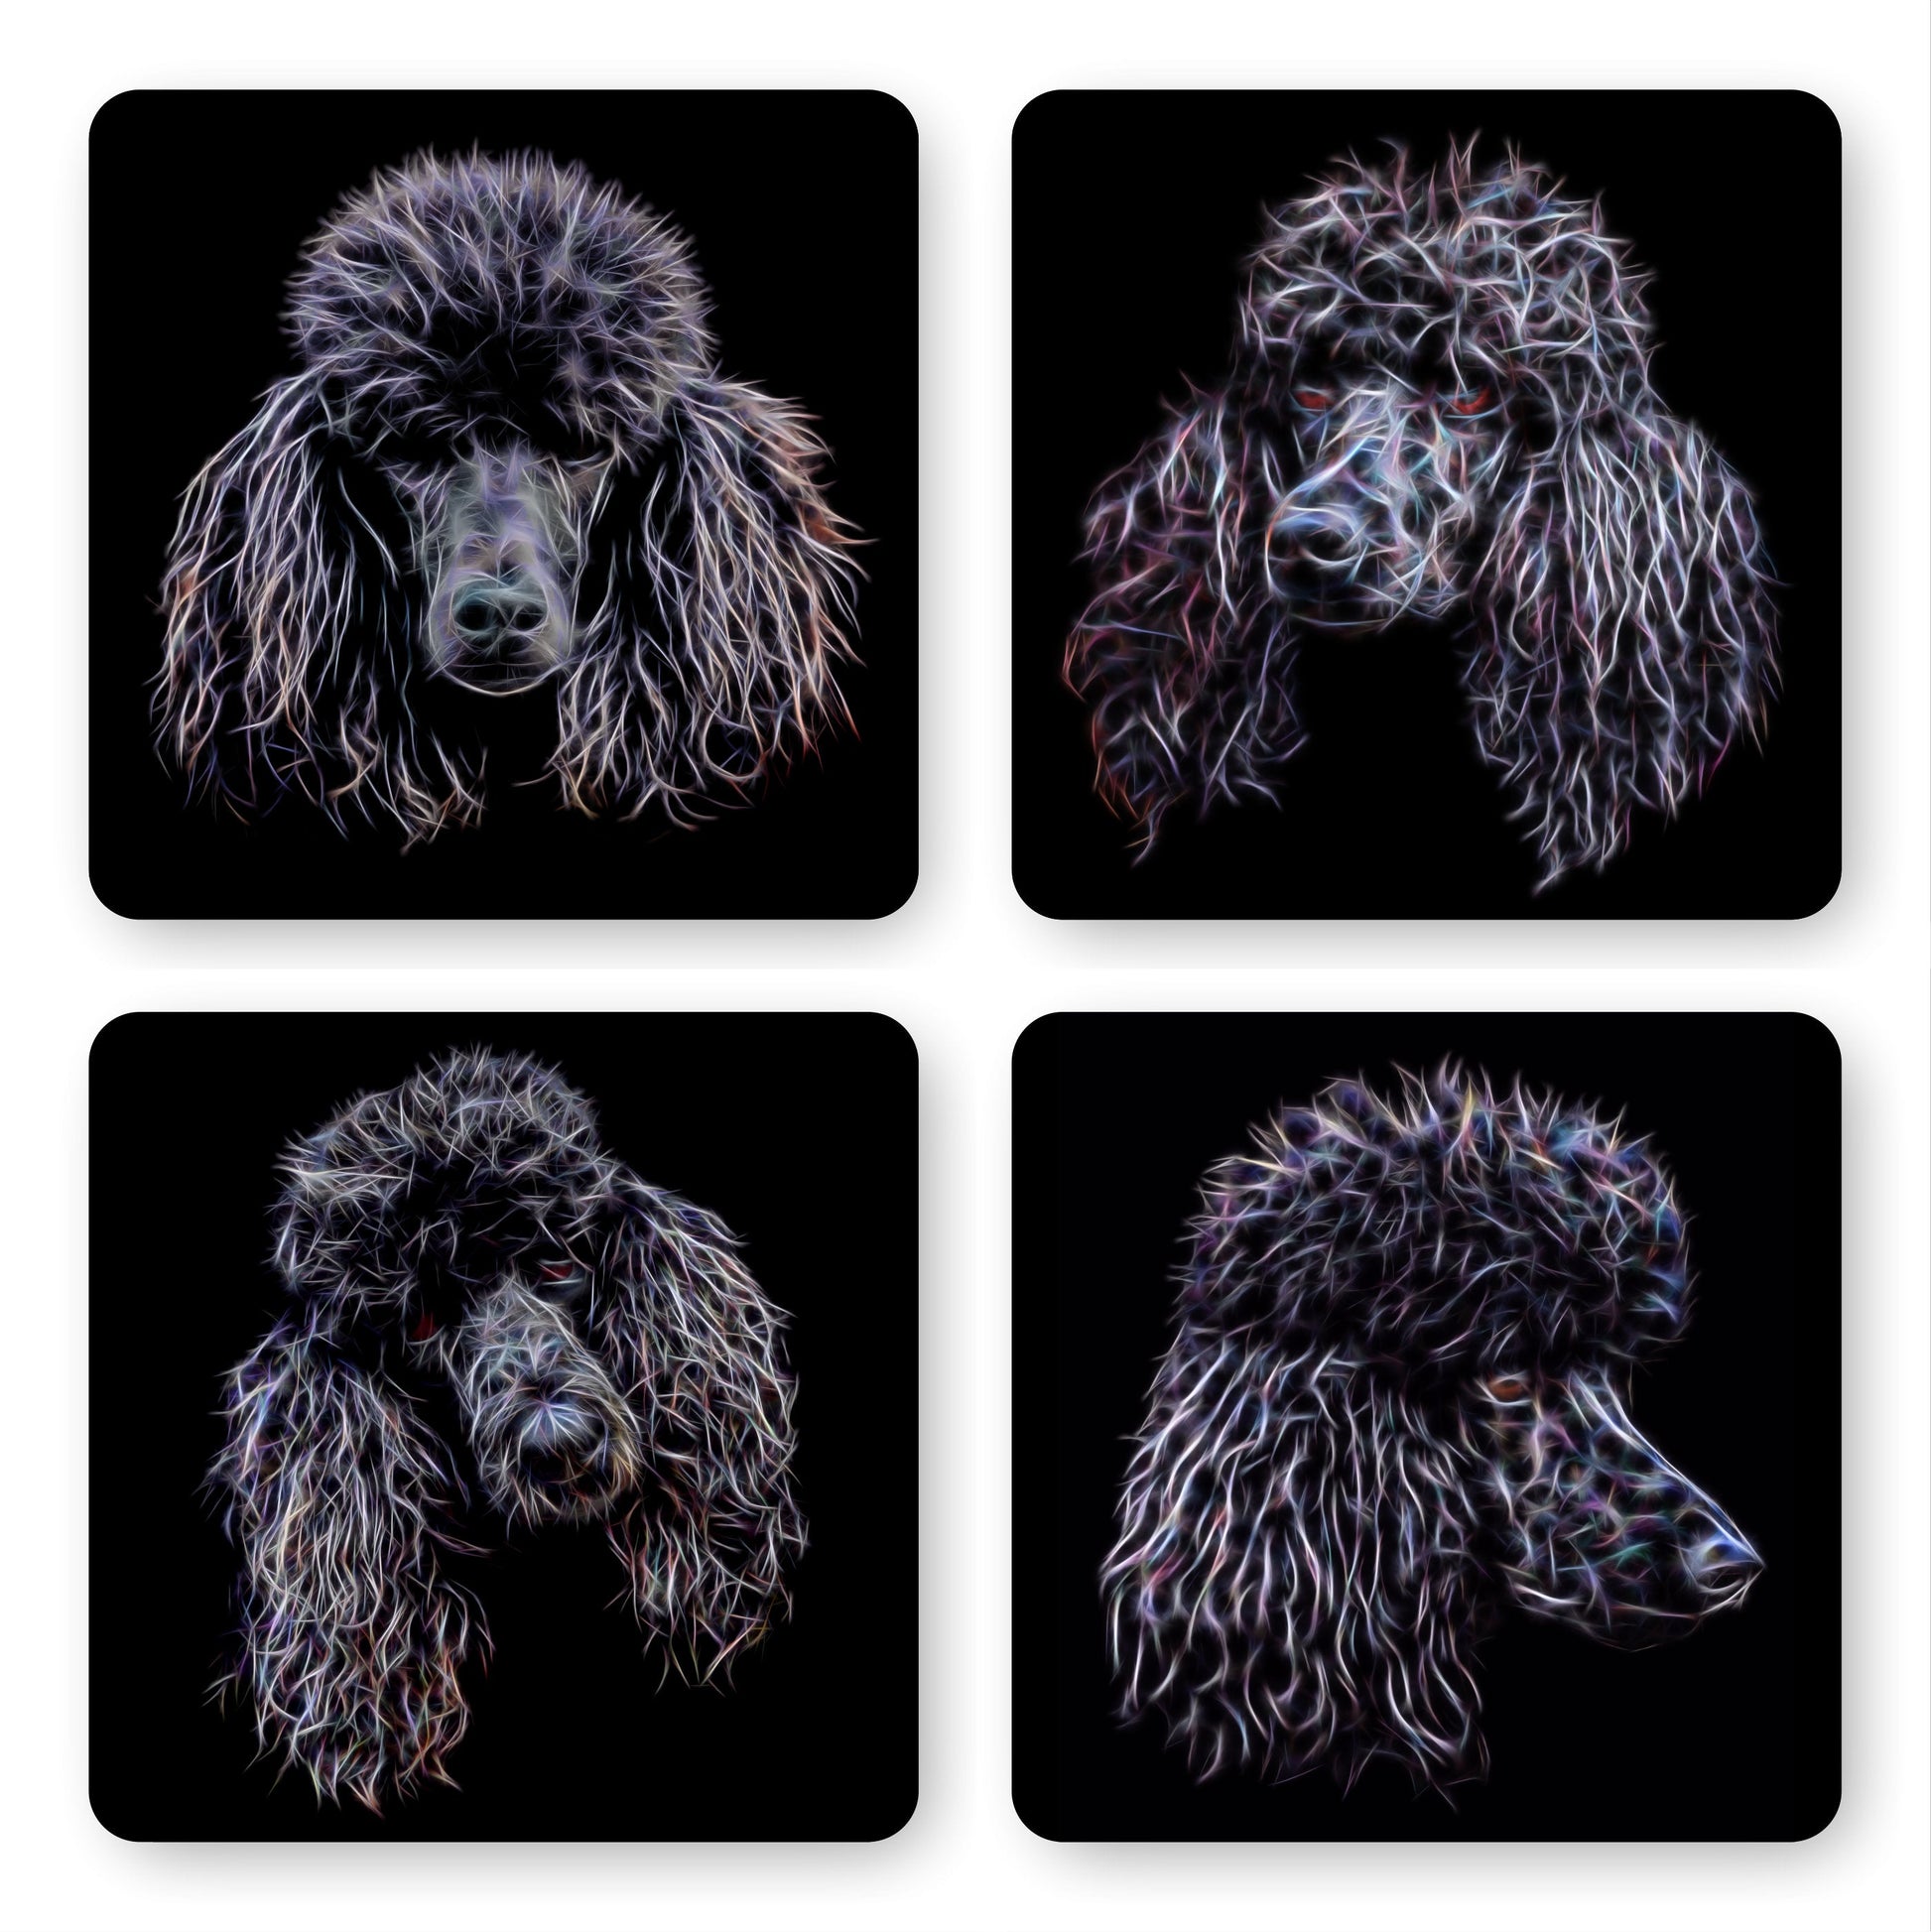 Black Standard Poodle Coasters, Set of 4, with Stunning Fractal Art Design.